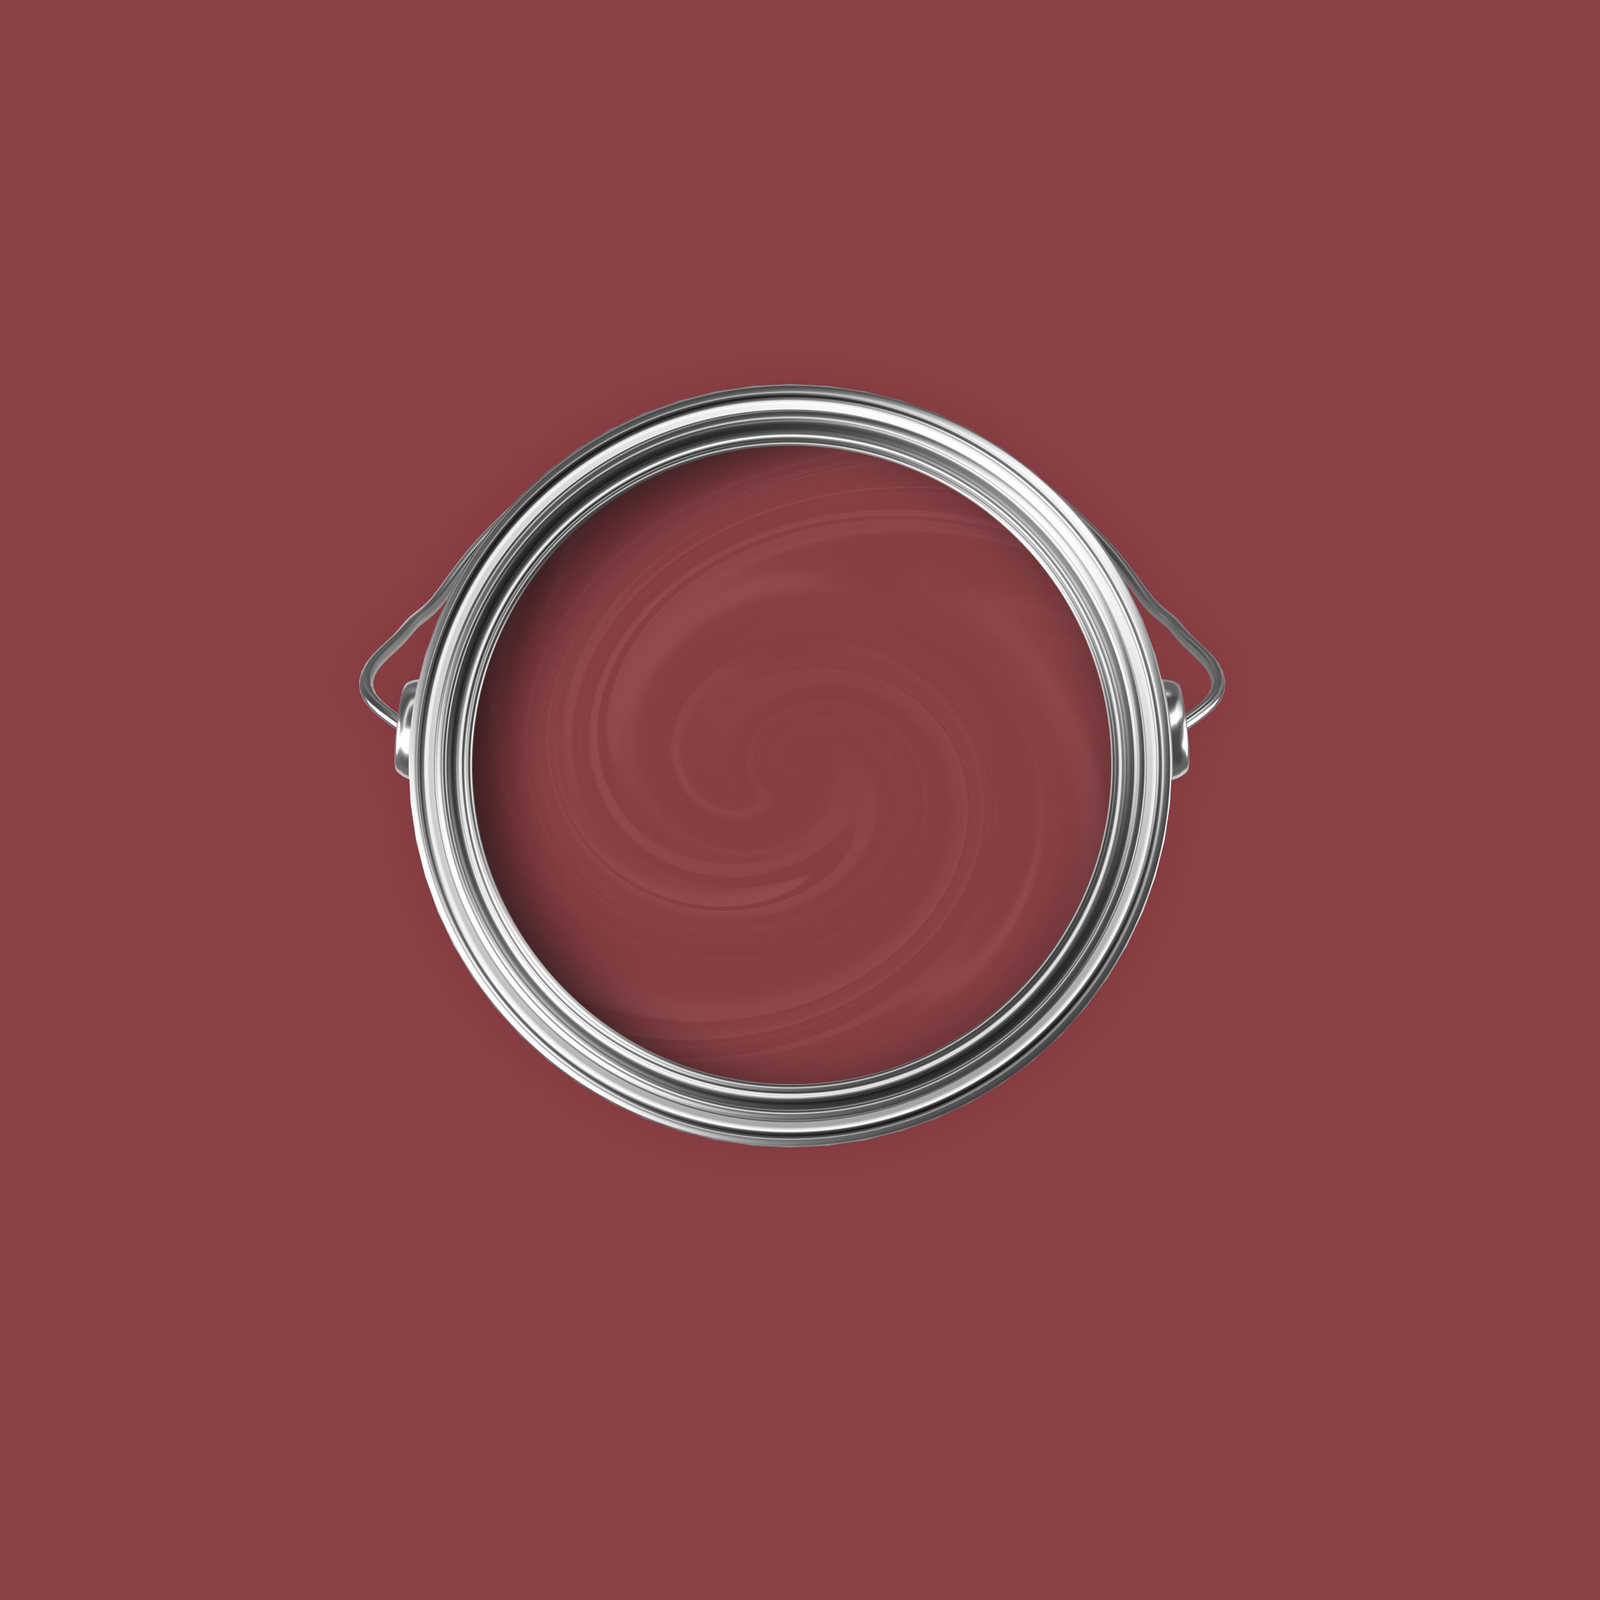             Pittura murale Premium rosso ciliegia caldo »Luxury Lipstick« NW1006 – 2,5 litri
        